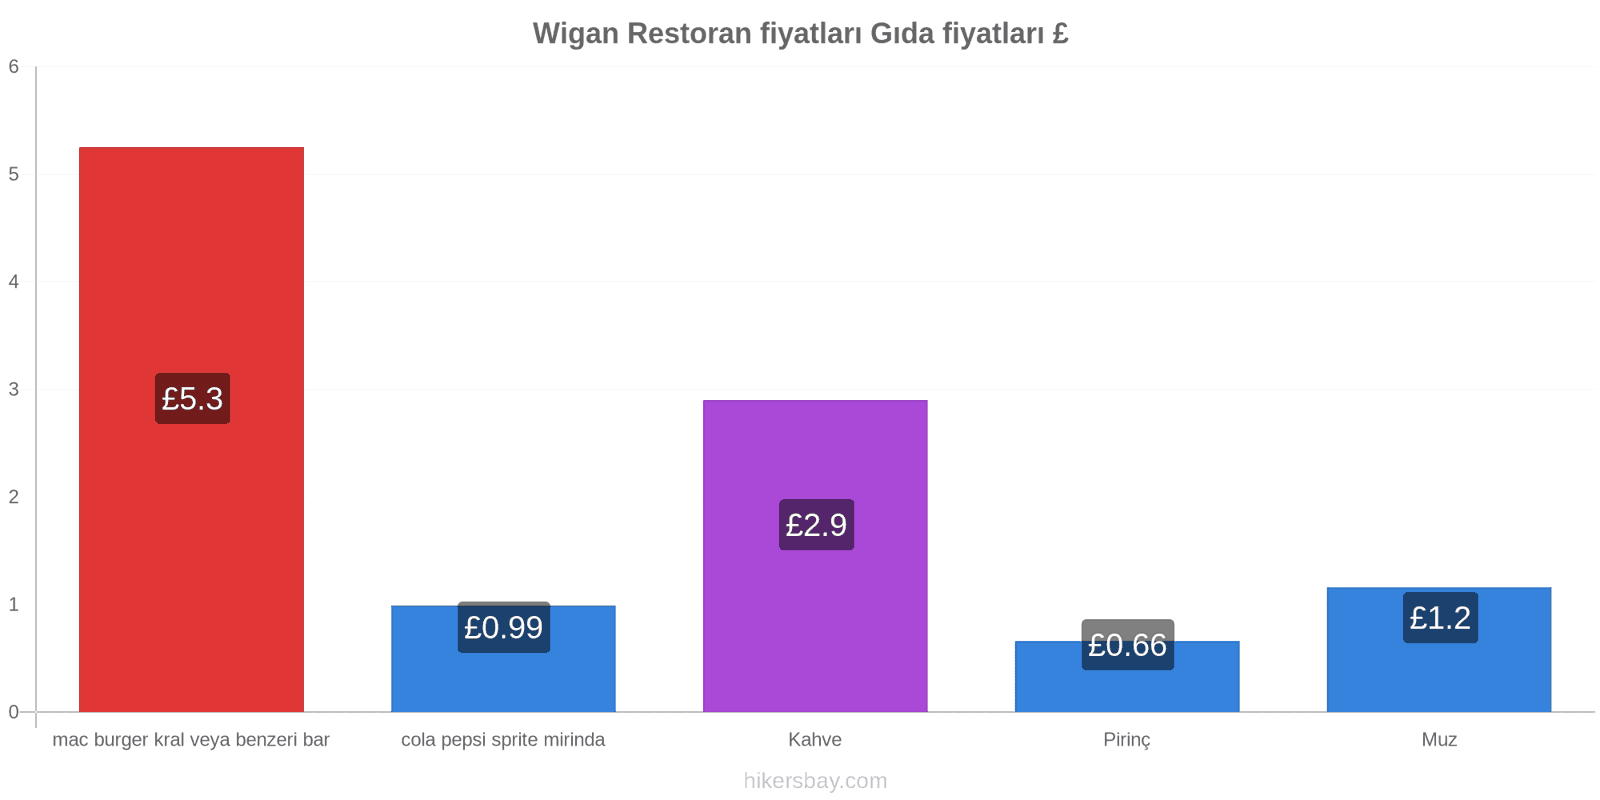 Wigan fiyat değişiklikleri hikersbay.com